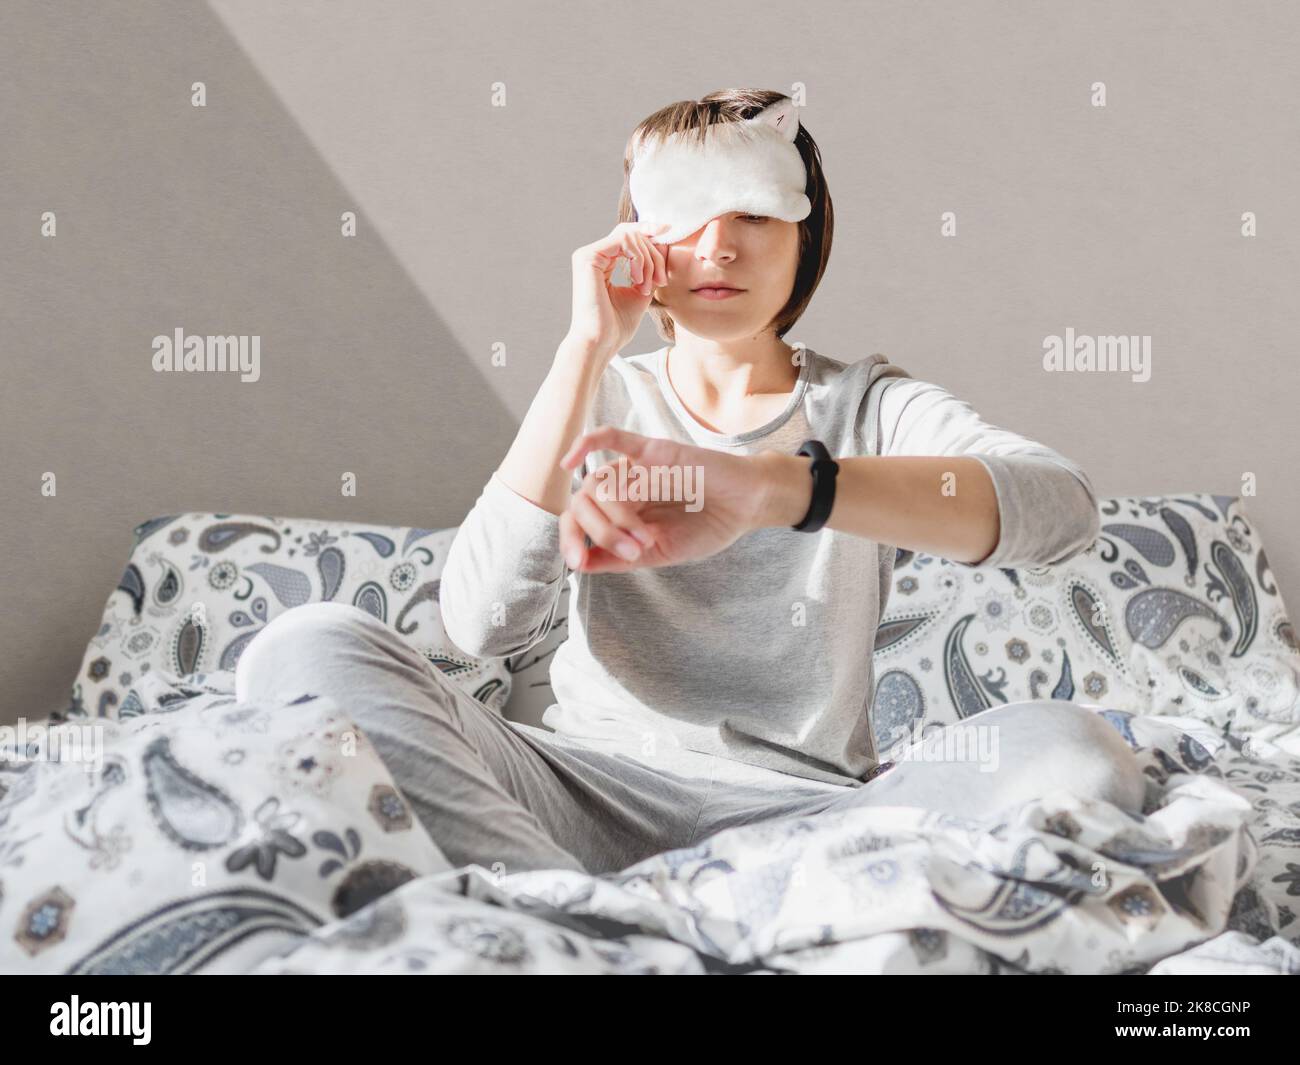 Donna addormentata in pajama grigia e maschera addormentata sul viso. Si è appena svegliata e si siede a letto. Mattina presto in casa accogliente. Foto Stock